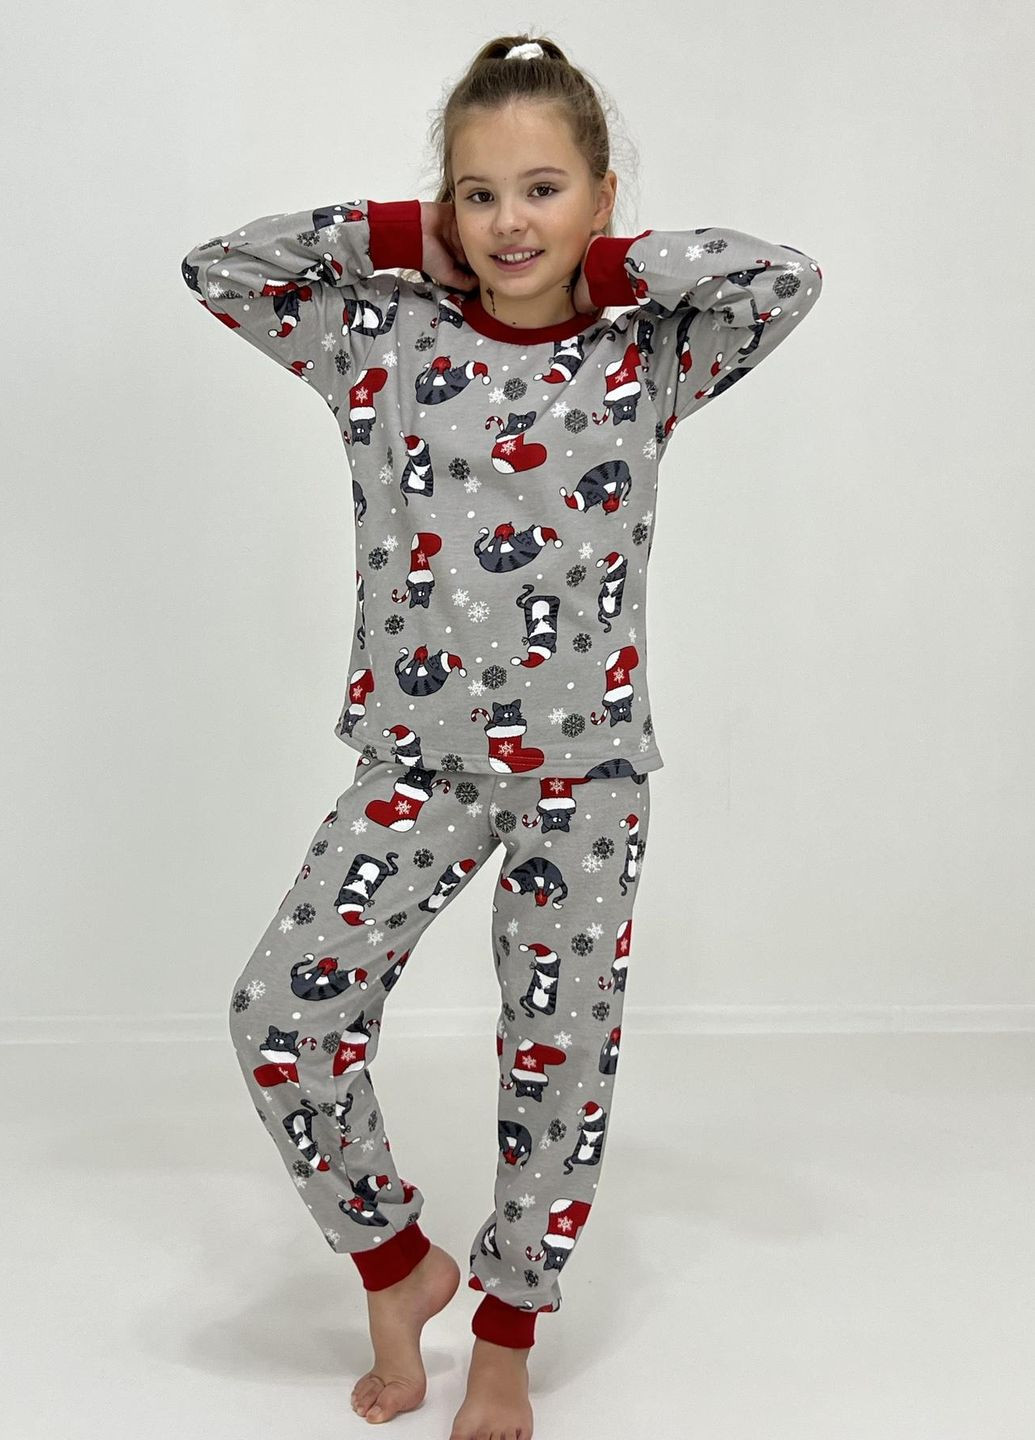 Серая зимняя пижама детская байка новогодние сапожки 152 серая 11849985-4 Triko